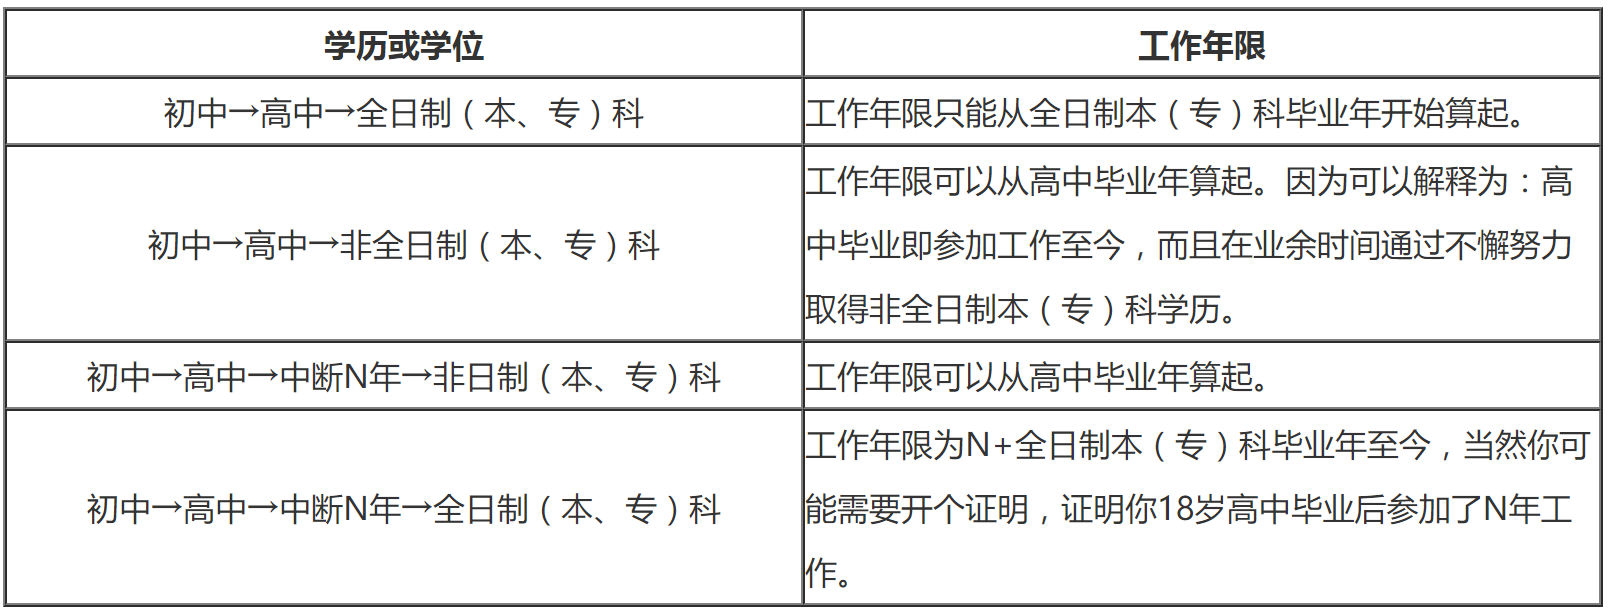 2020年重庆一级消防工程师考试报名如何计算工作年限